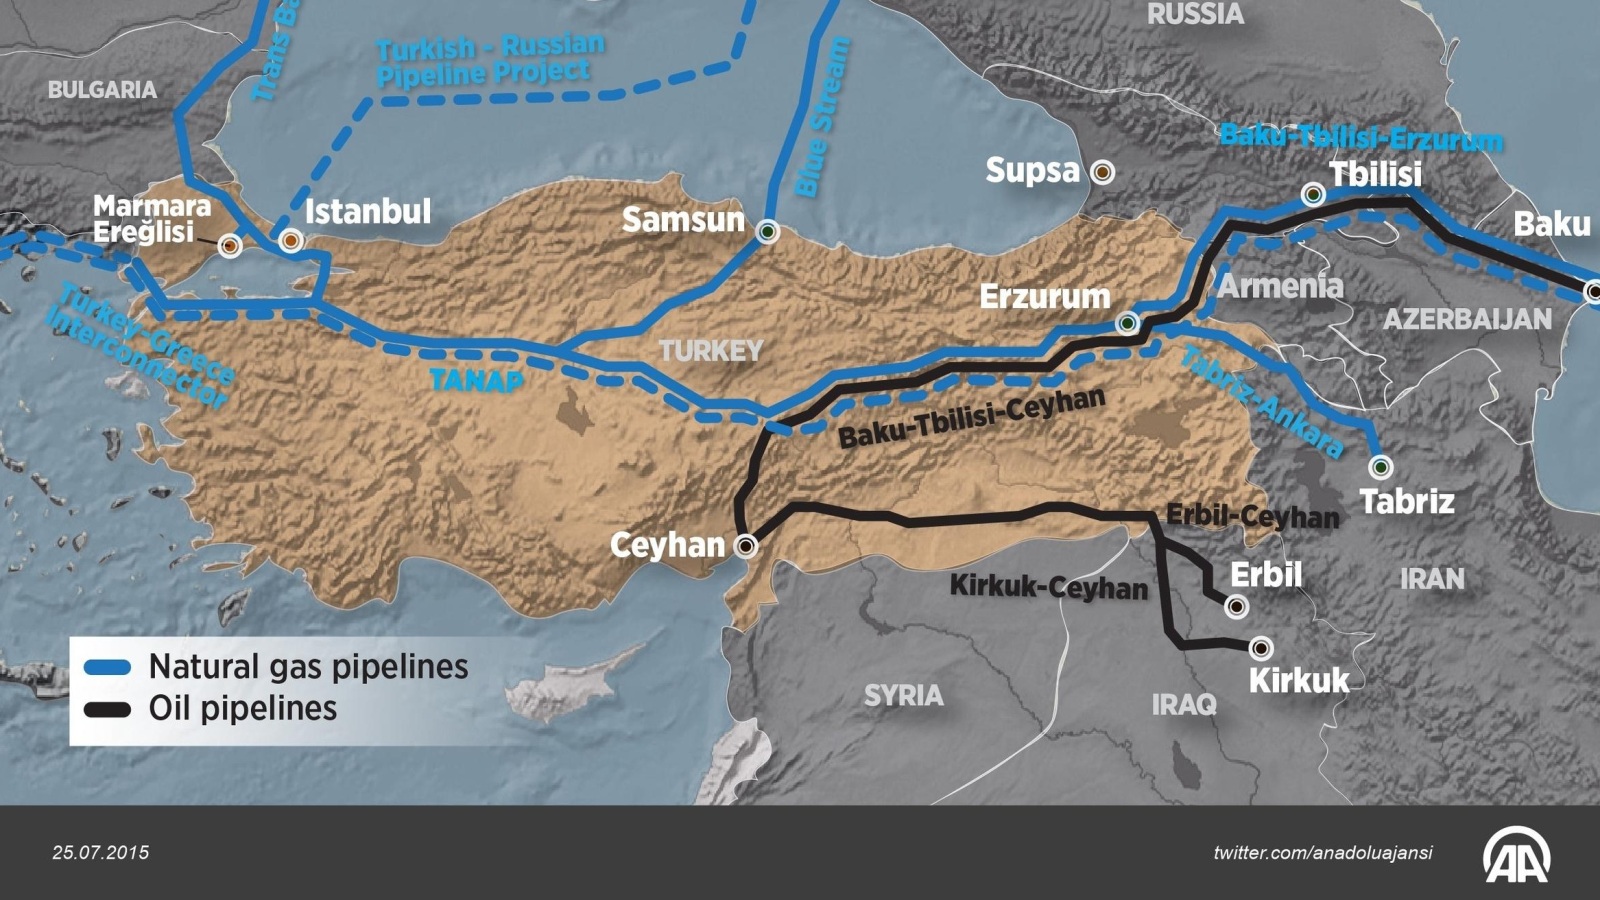 ‪خريطة توضح أنابيب النفط والغاز الدولية التي تمر عبر تركيا‬ (غيتي)